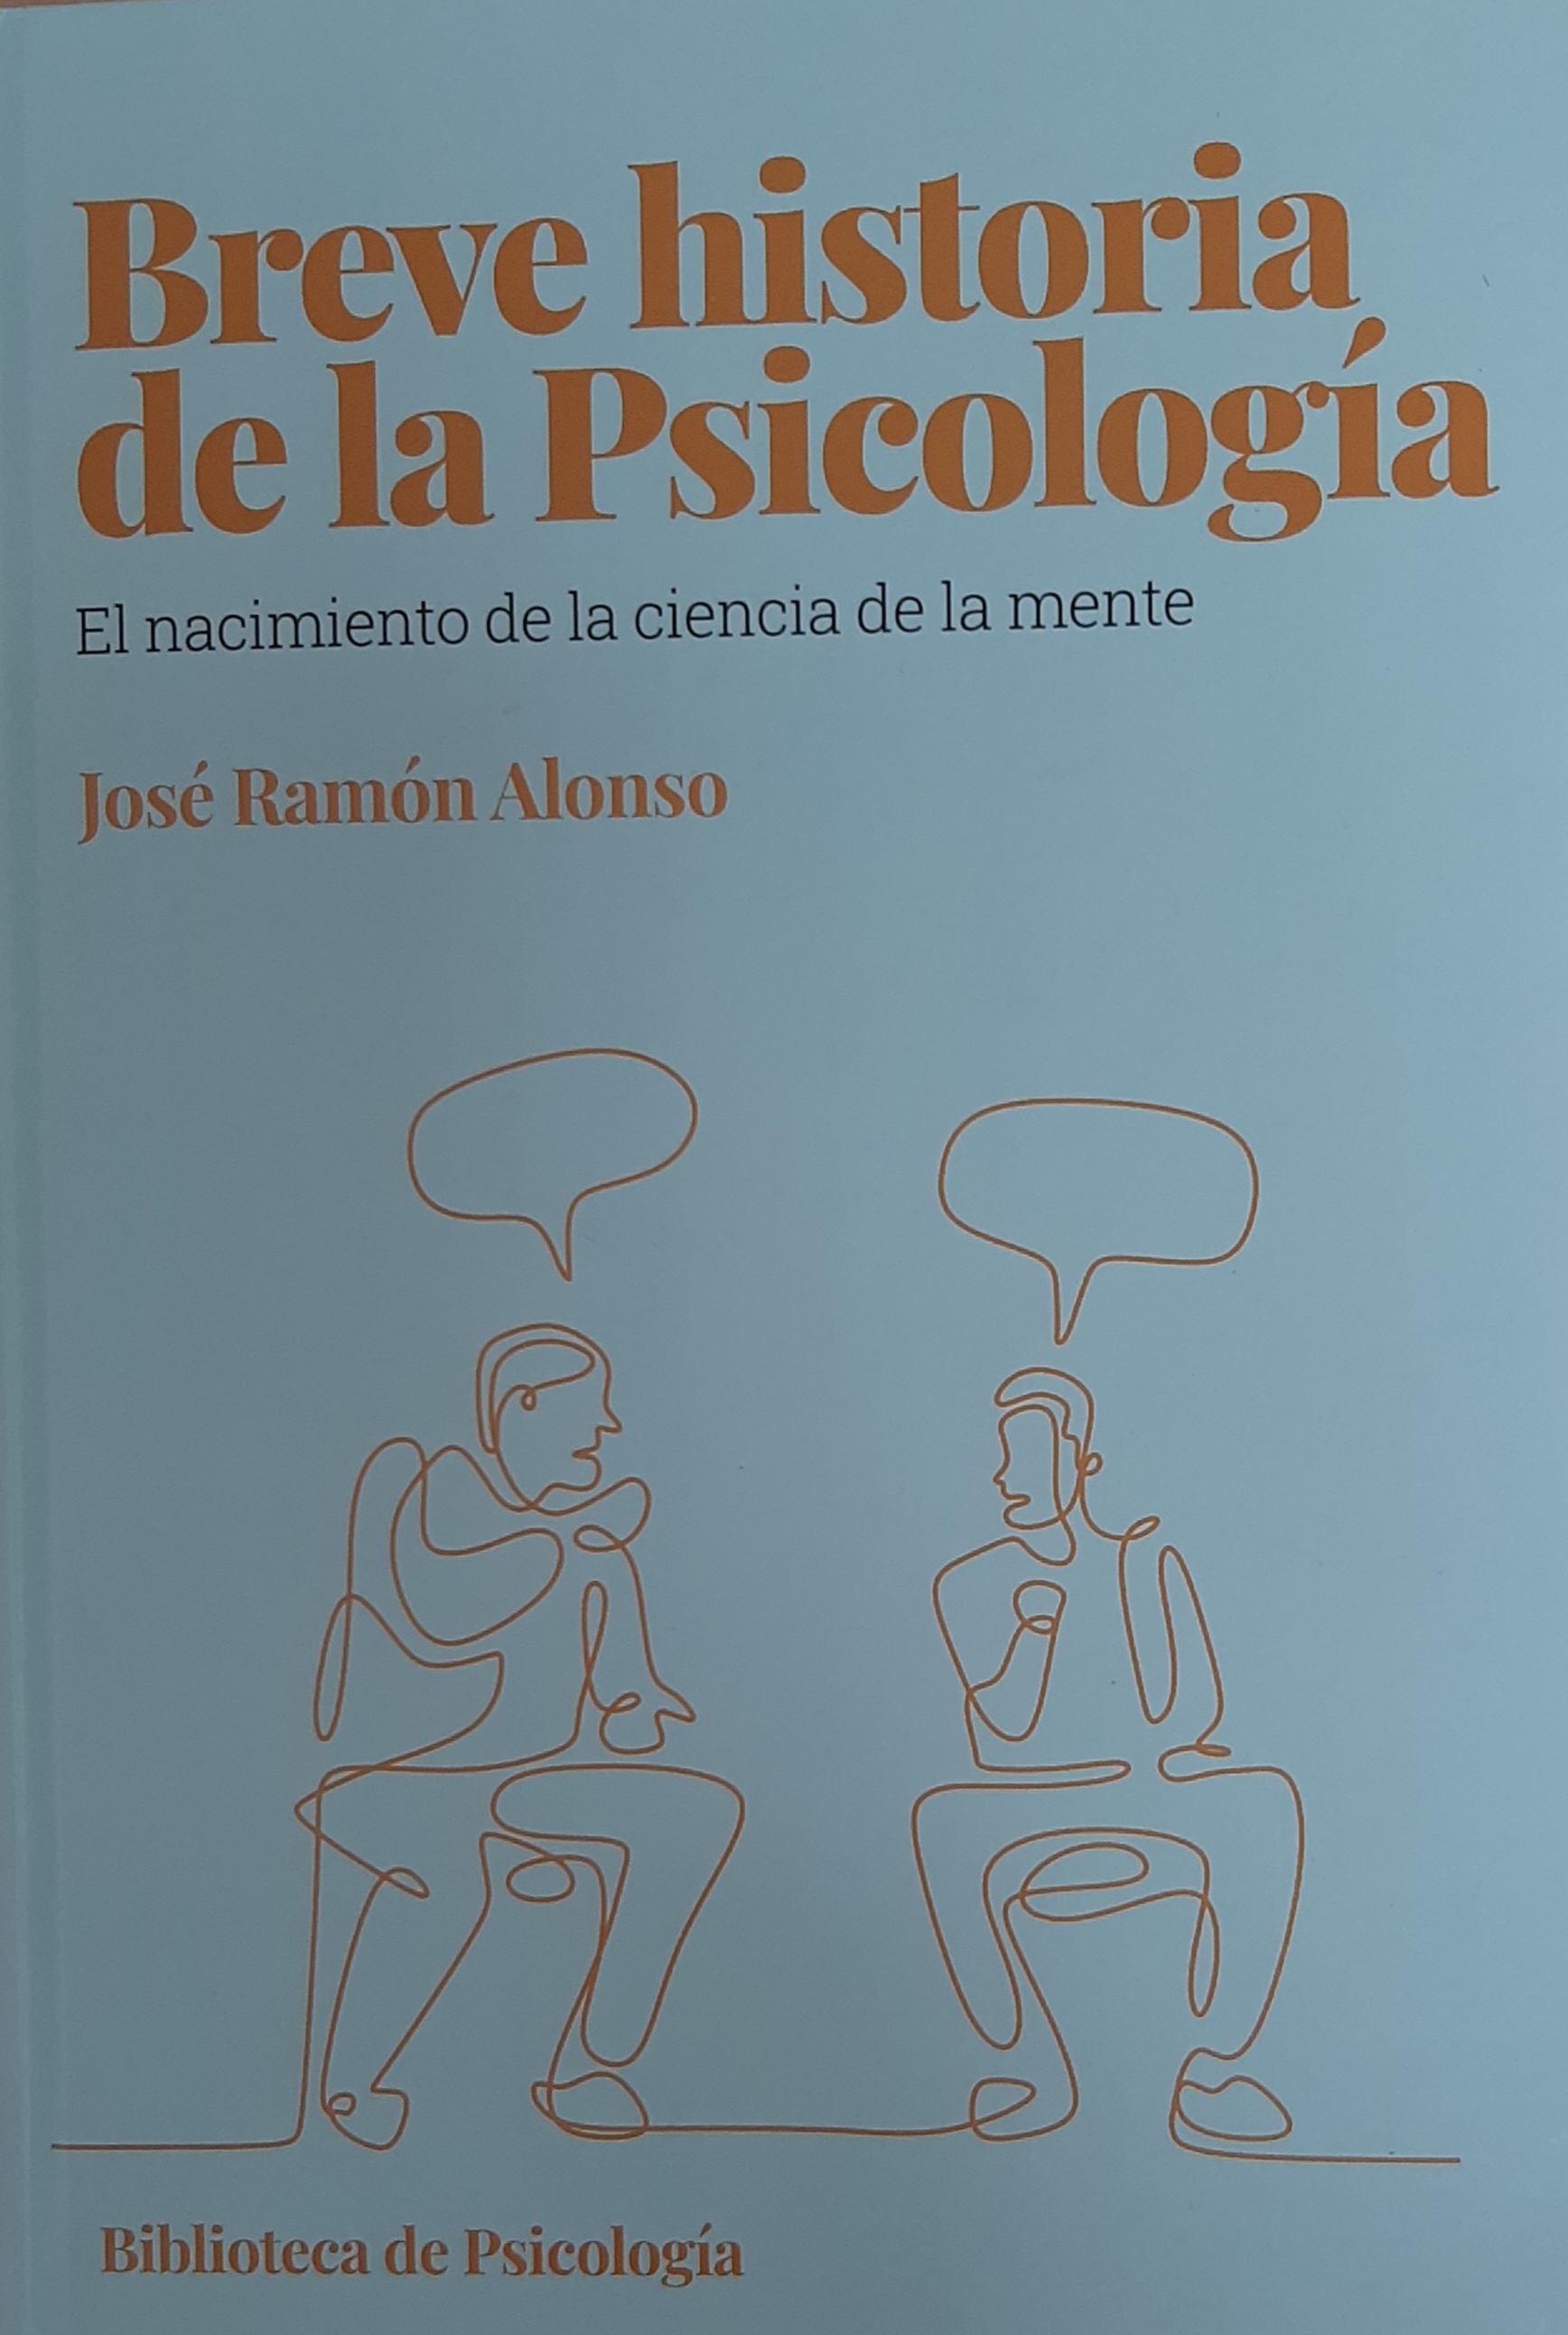 Imagen de portada del libro Breve historia de la psicología